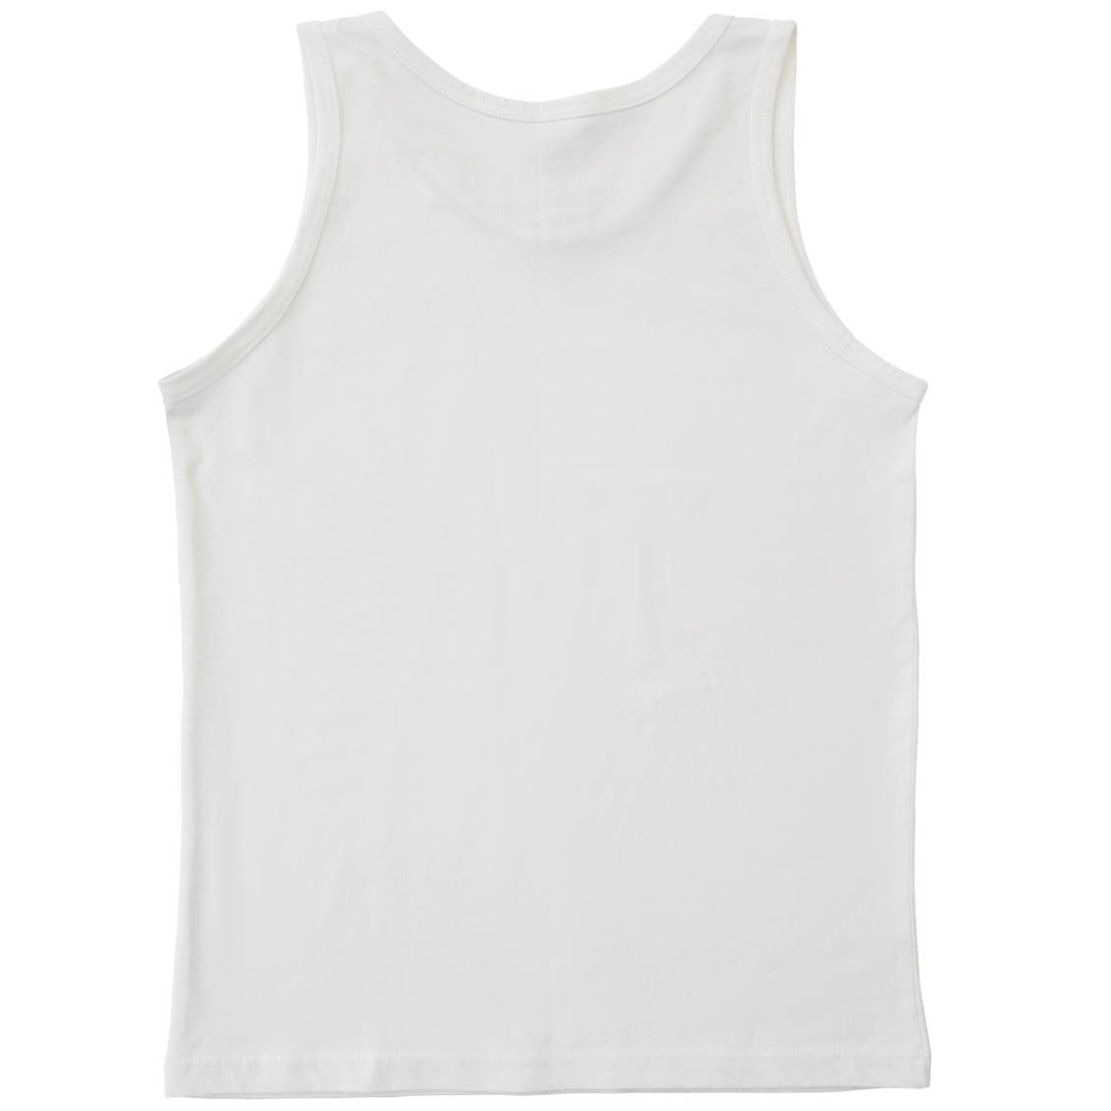 Camiseta Blanca Sin Mangas para Niño Oscar Hackman Modelo Ohoic2